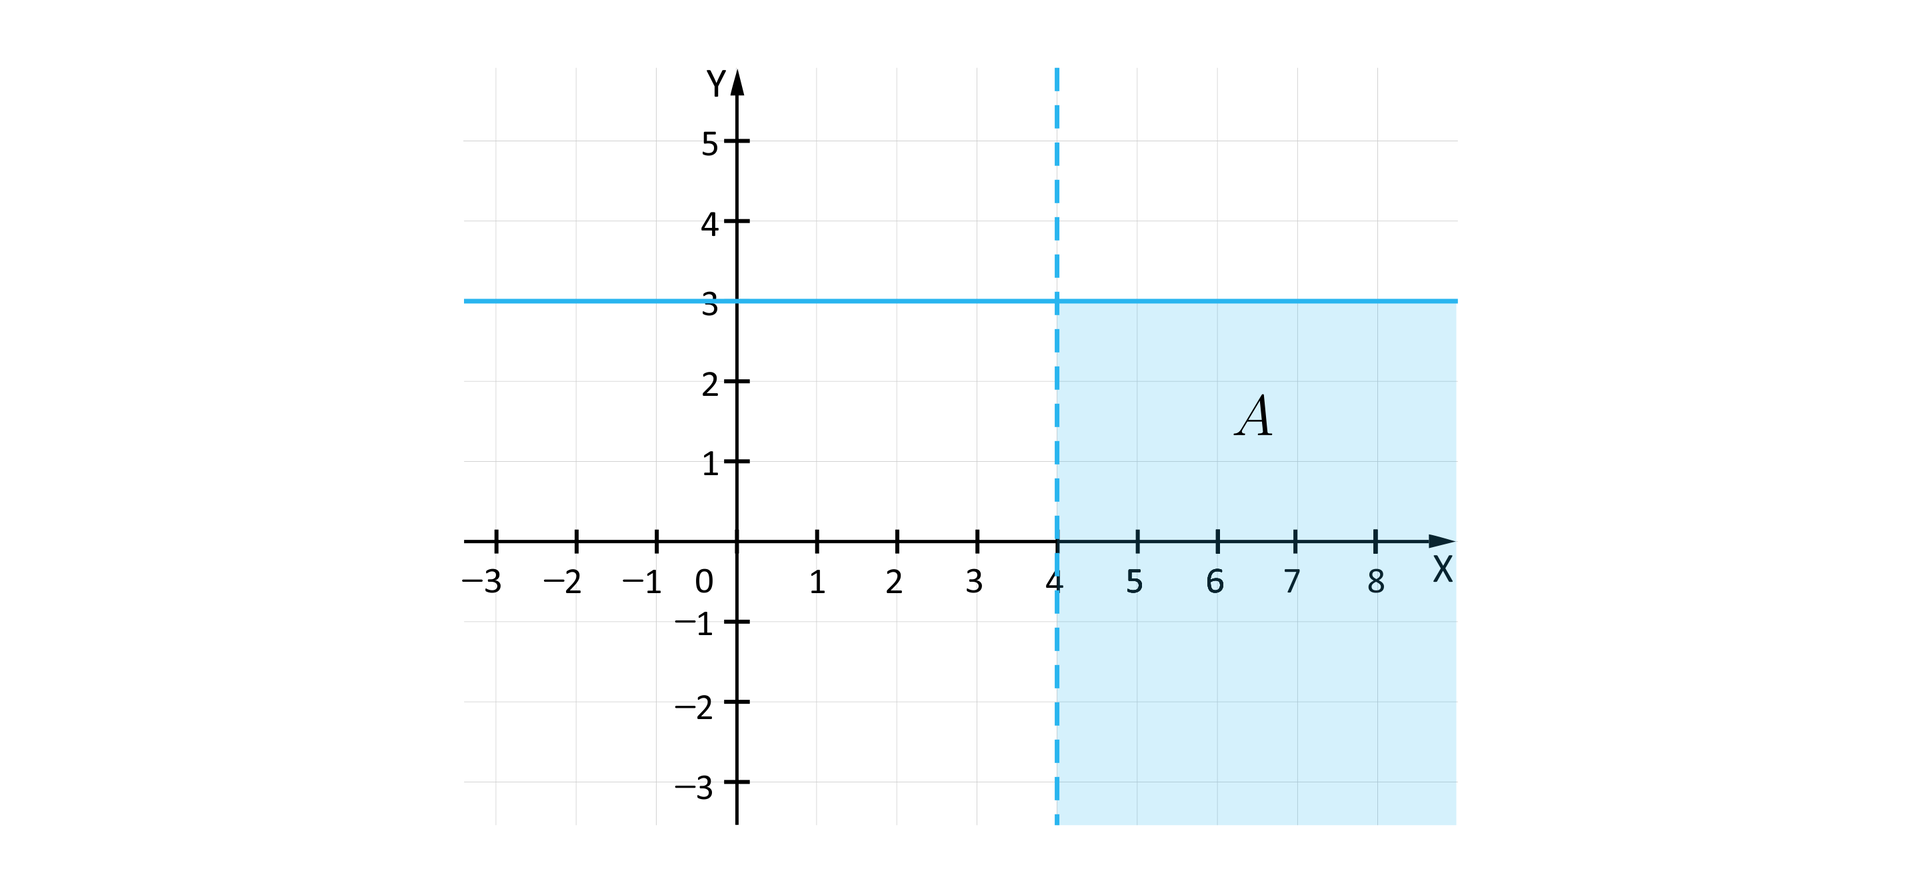 Rysunek przedstawia układ współrzędnych z poziomą osią X od minus trzech do ośmiu i z pionową osią Y od minus trzech do pięciu. Na płaszczyźnie narysowana jest linią przerywaną pionowa prosta przecinająca pod kątem prostym oś X w punkcie 4. Na prawo od tej prostej zaznaczony jest kolorem zbiór A, jednak ograniczony jest on z góry przez drugą prostą, narysowaną linią ciągłą. Prosta ta jest pozioma i przecina oś Y w punkcie 3.